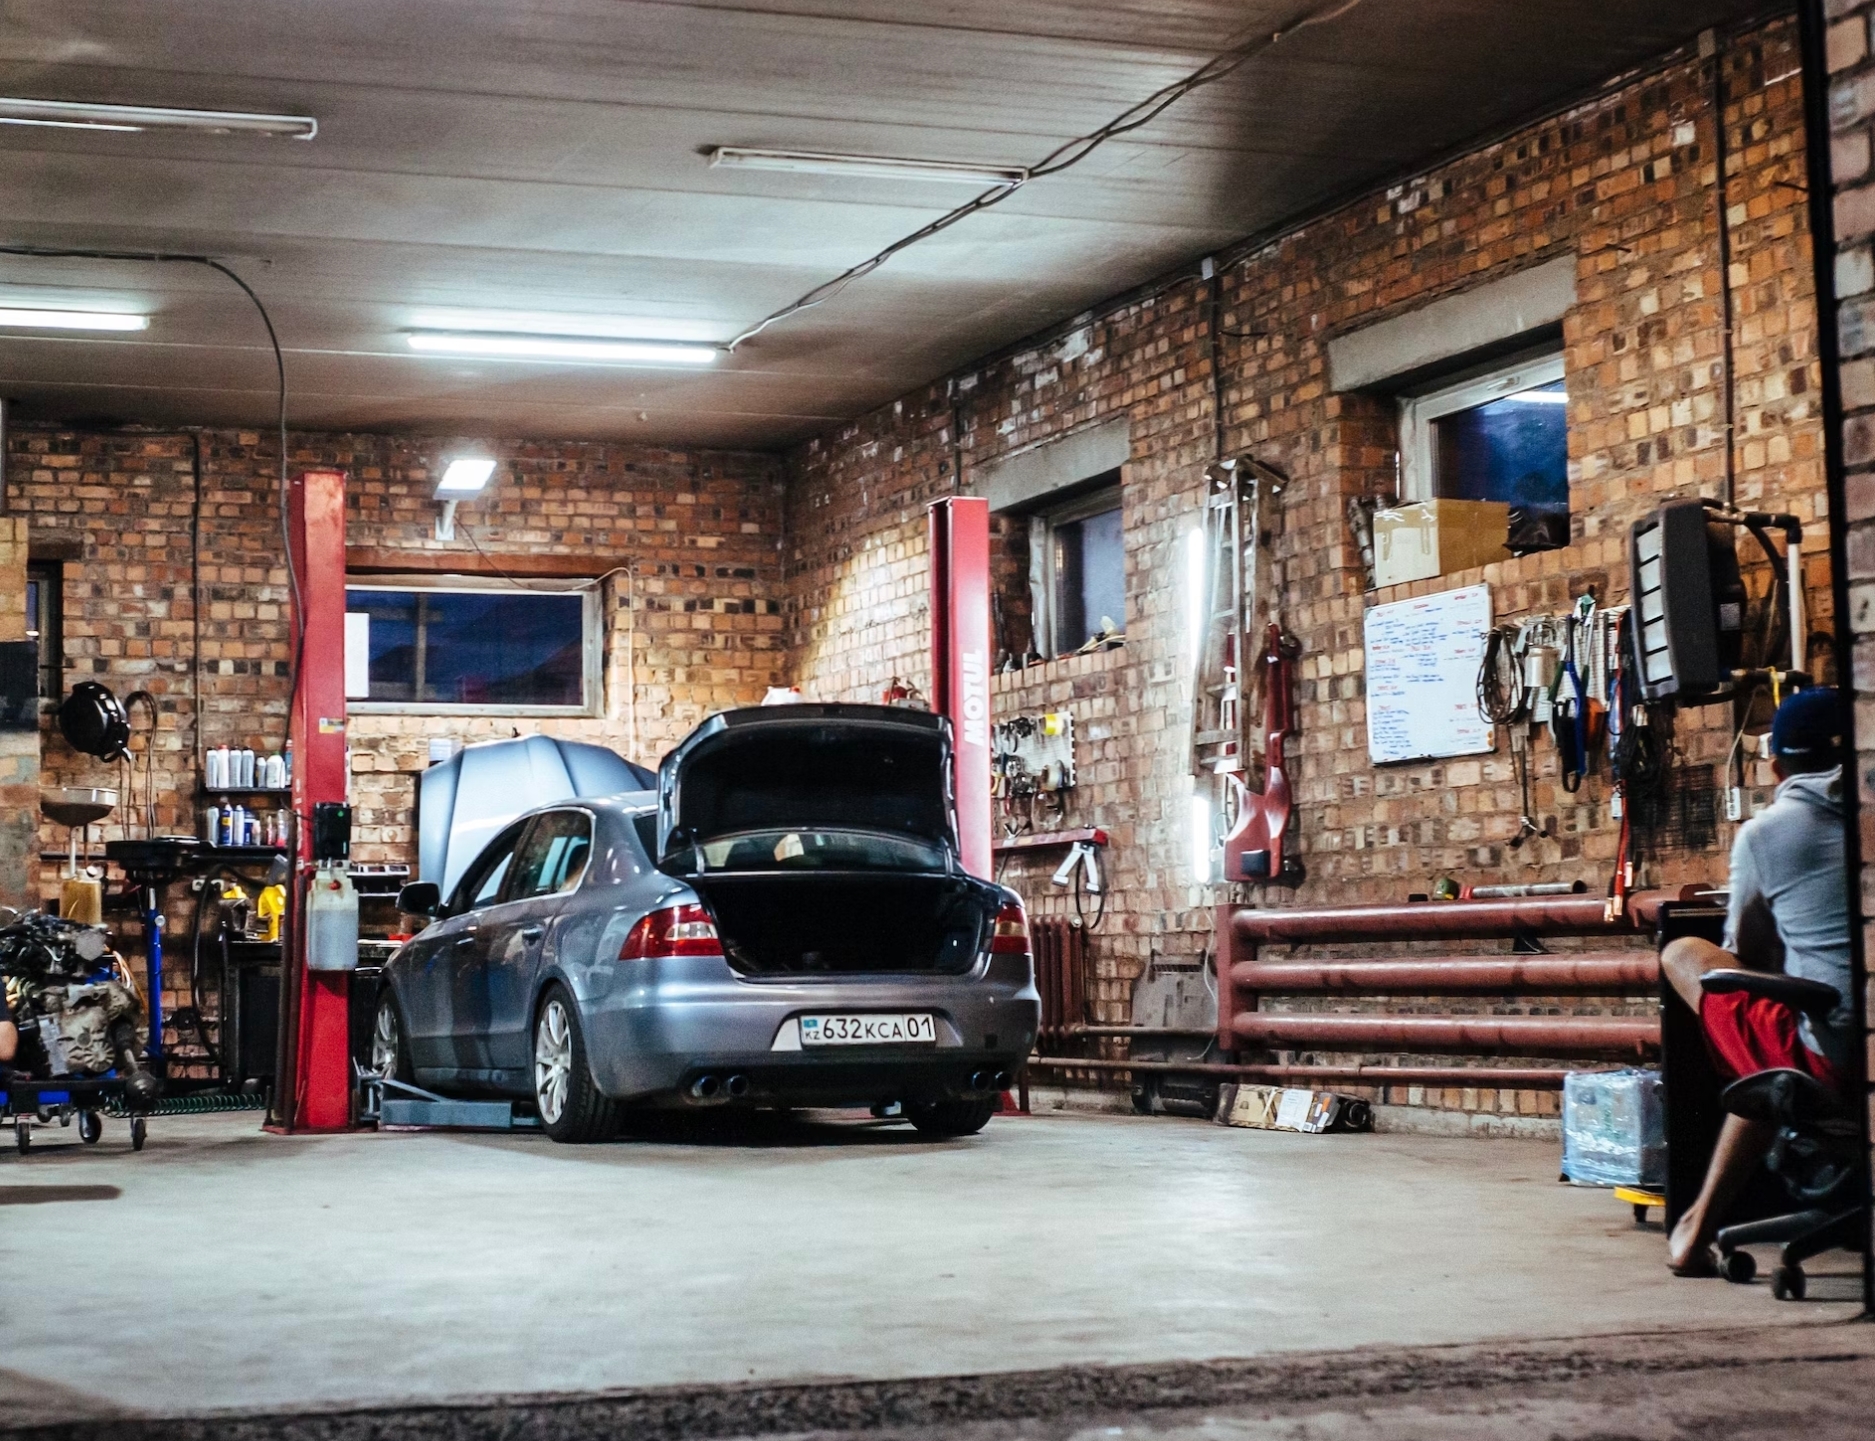 Garage de voiture rappel sur les garanties légales de vices cachés